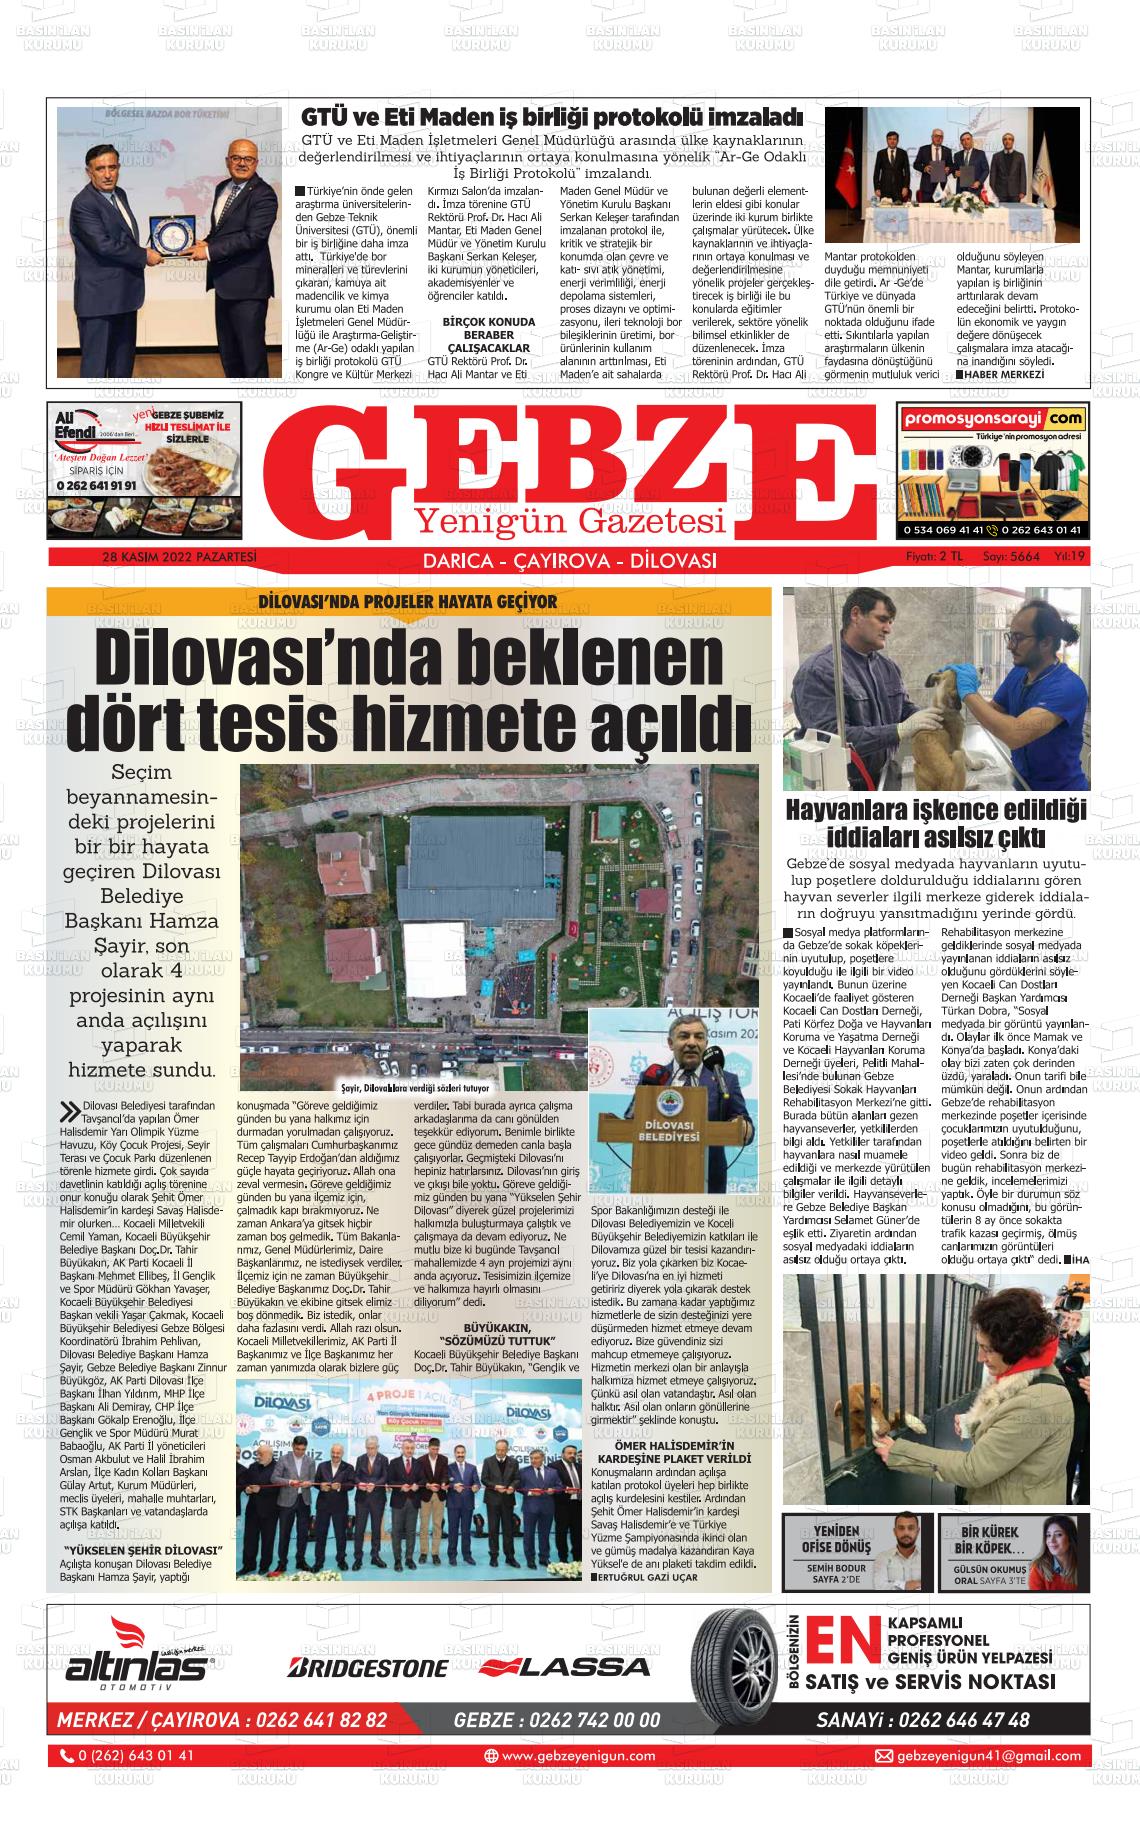 28 Kasım 2022 Gebze Yenigün Gazete Manşeti